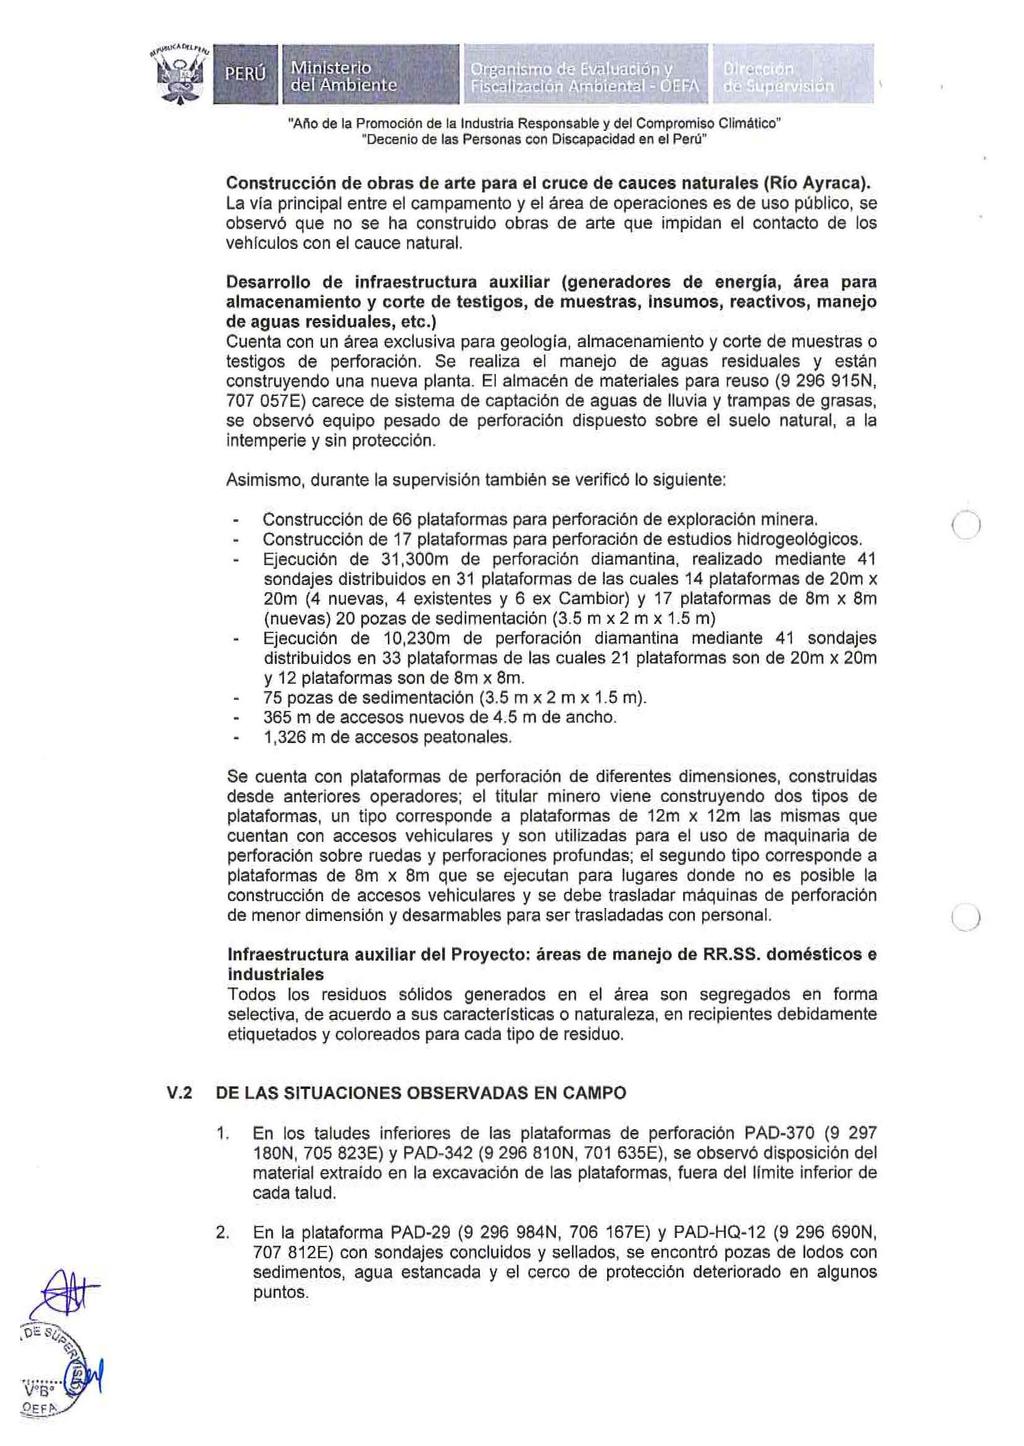 "A1'10 de la Promoción de la Industria Responsable y del Compromiso Climático" Construcción de obras de arte para el cruce de cauces naturales (Río Ayraca).